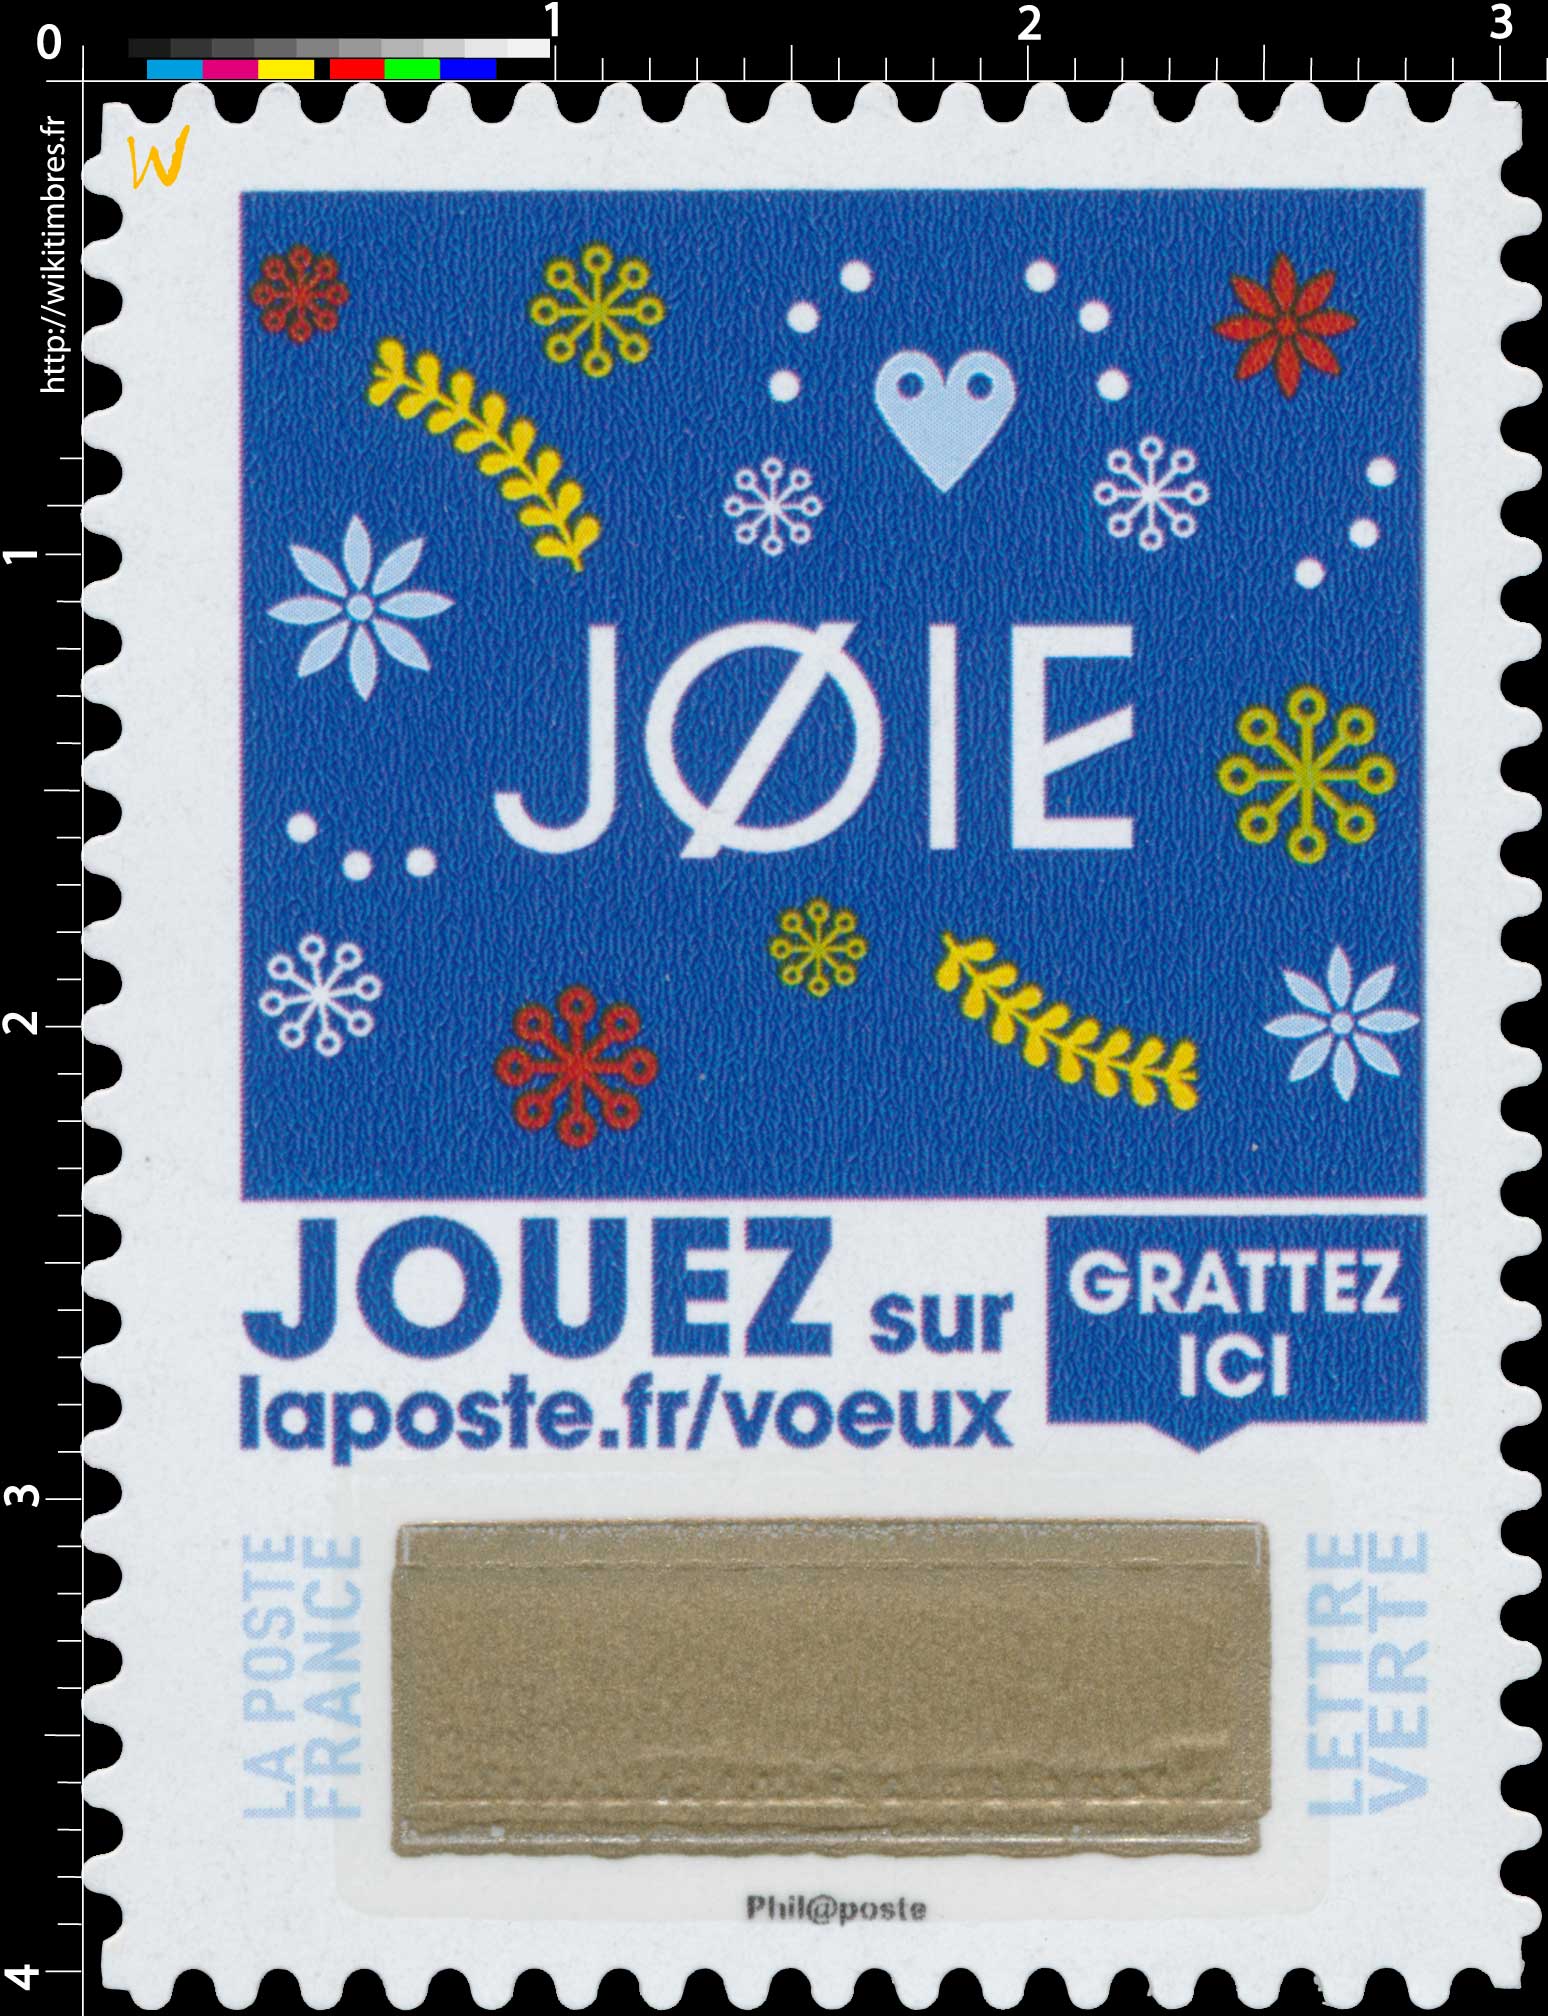  2018 Joie - Jouer sur laposte.fr/voeux - Gratter ici